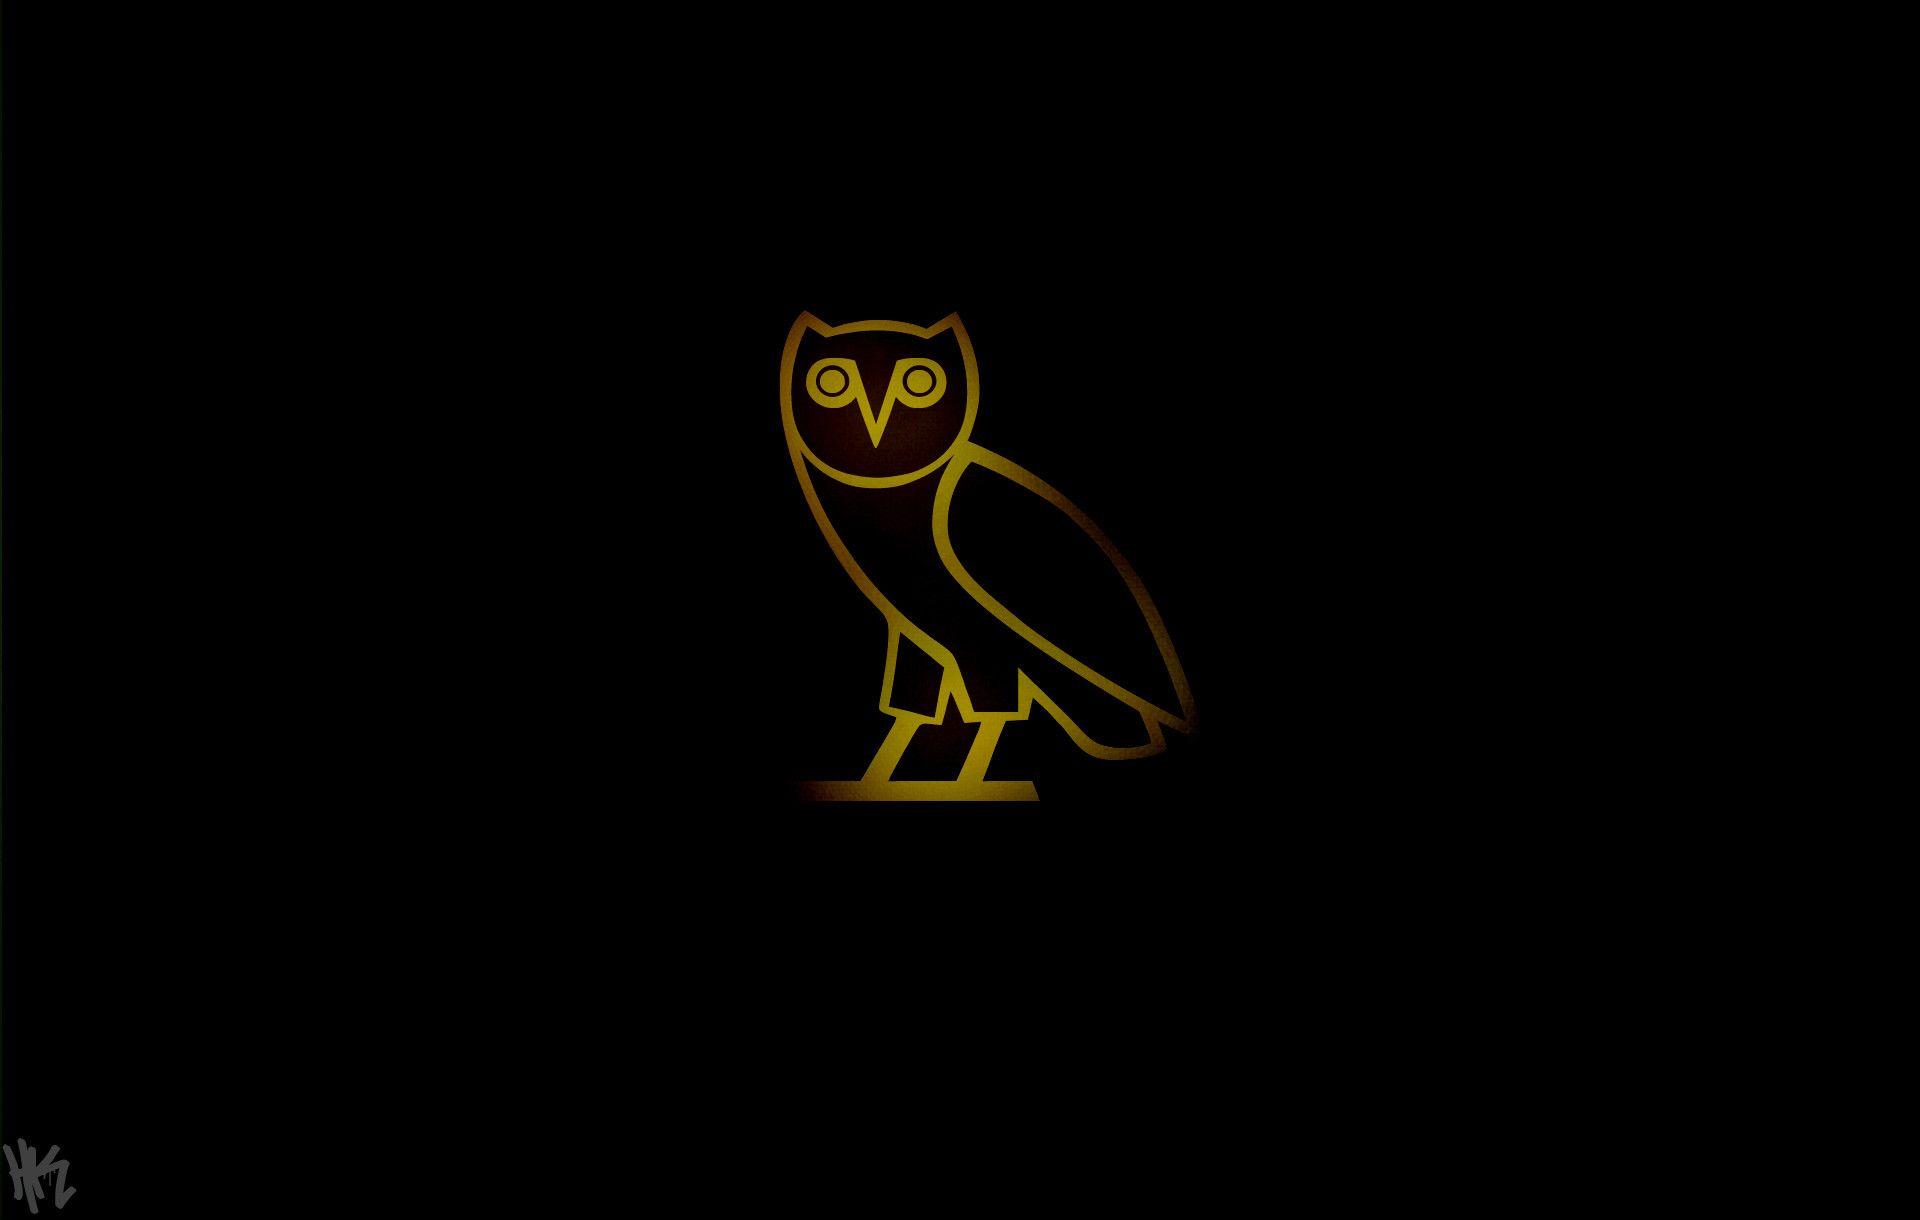 Drake Ovoxo Logo - 59 Best Free Drake OVO Logo Wallpapers - WallpaperAccess